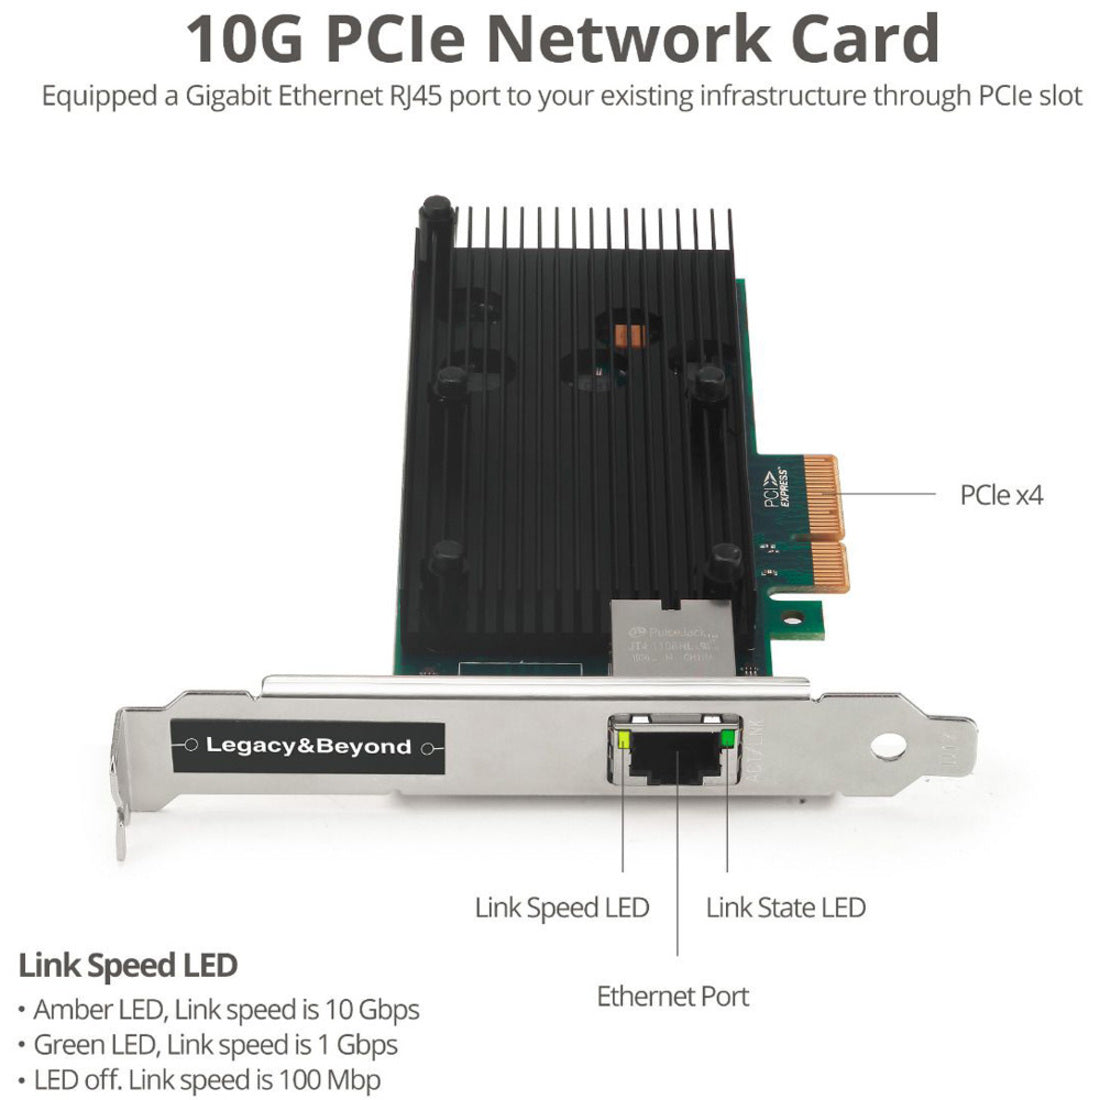 SIIG LB-GE0211-S1 シングルポート 10G イーサネットネットワーク PCI Express、10ギガビットイーサネットカード  ブランド名: SIIG ブランド名の日本語訳: SIIG